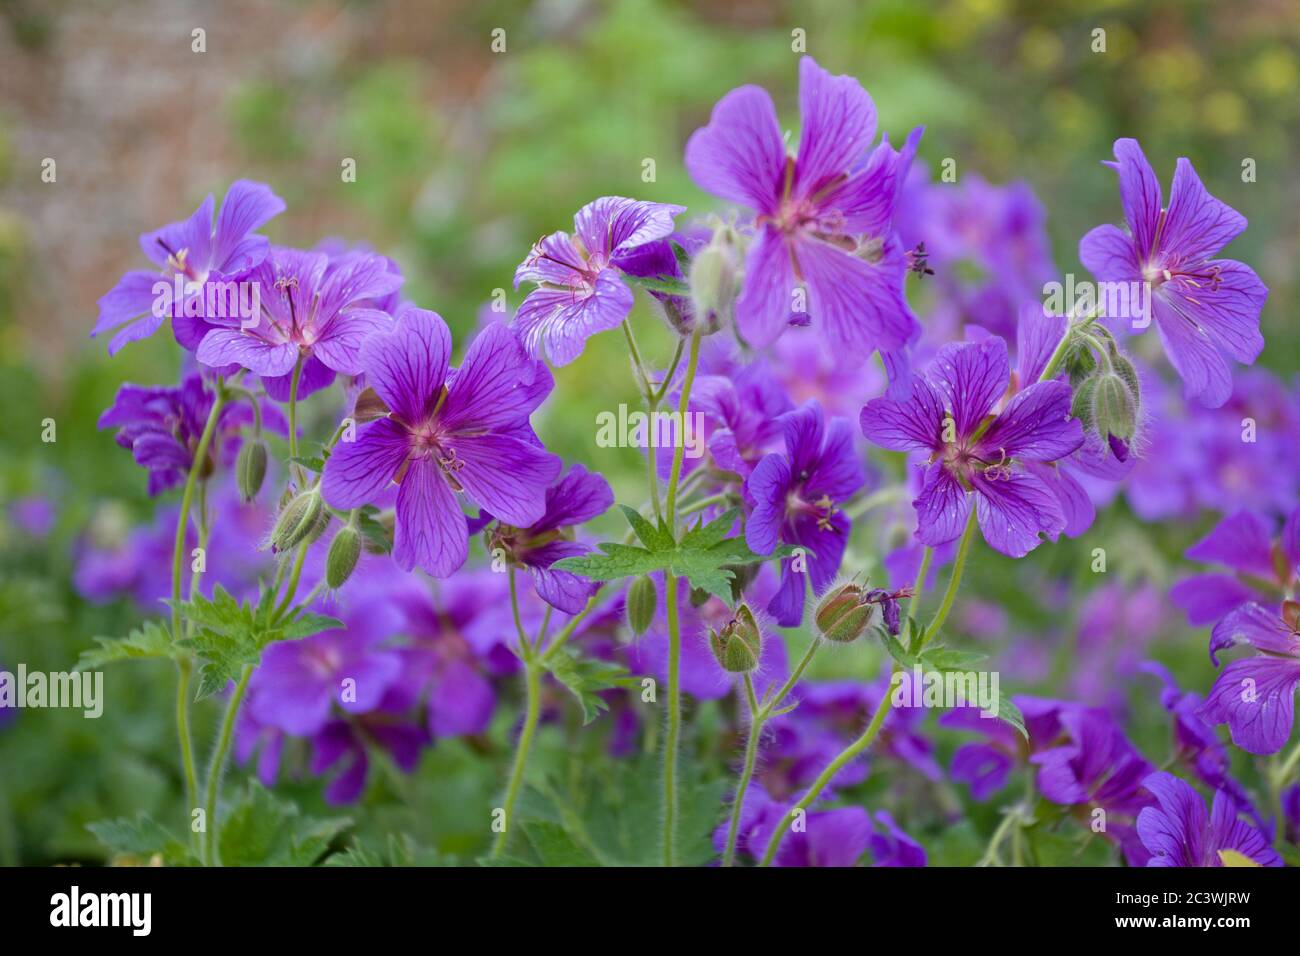 Purple Geraniums in cottage garden Stock Photo